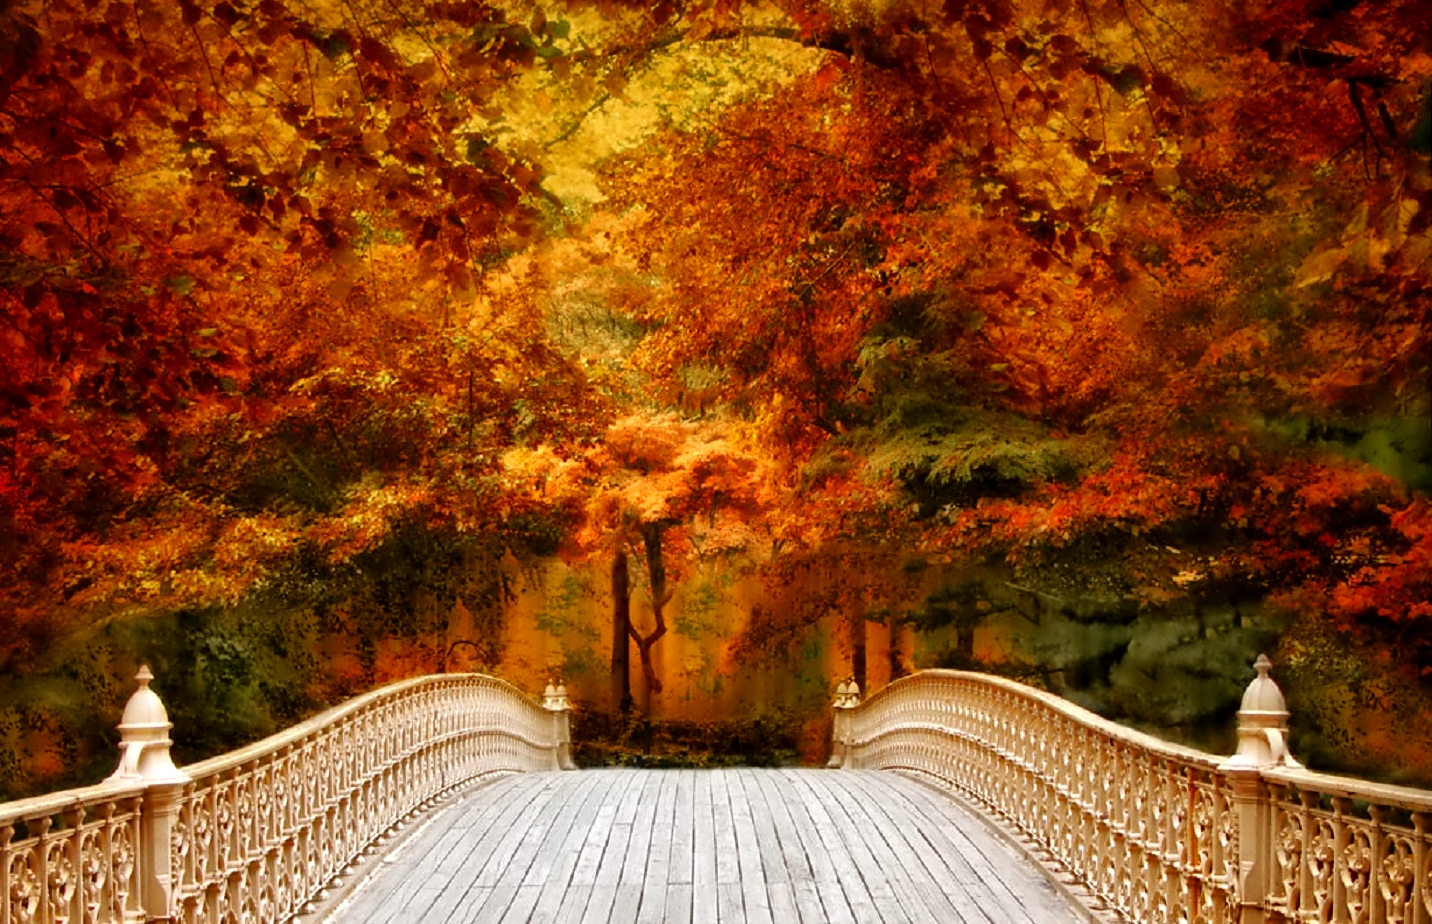 october wallpaper,nature,natural landscape,tree,leaf,autumn